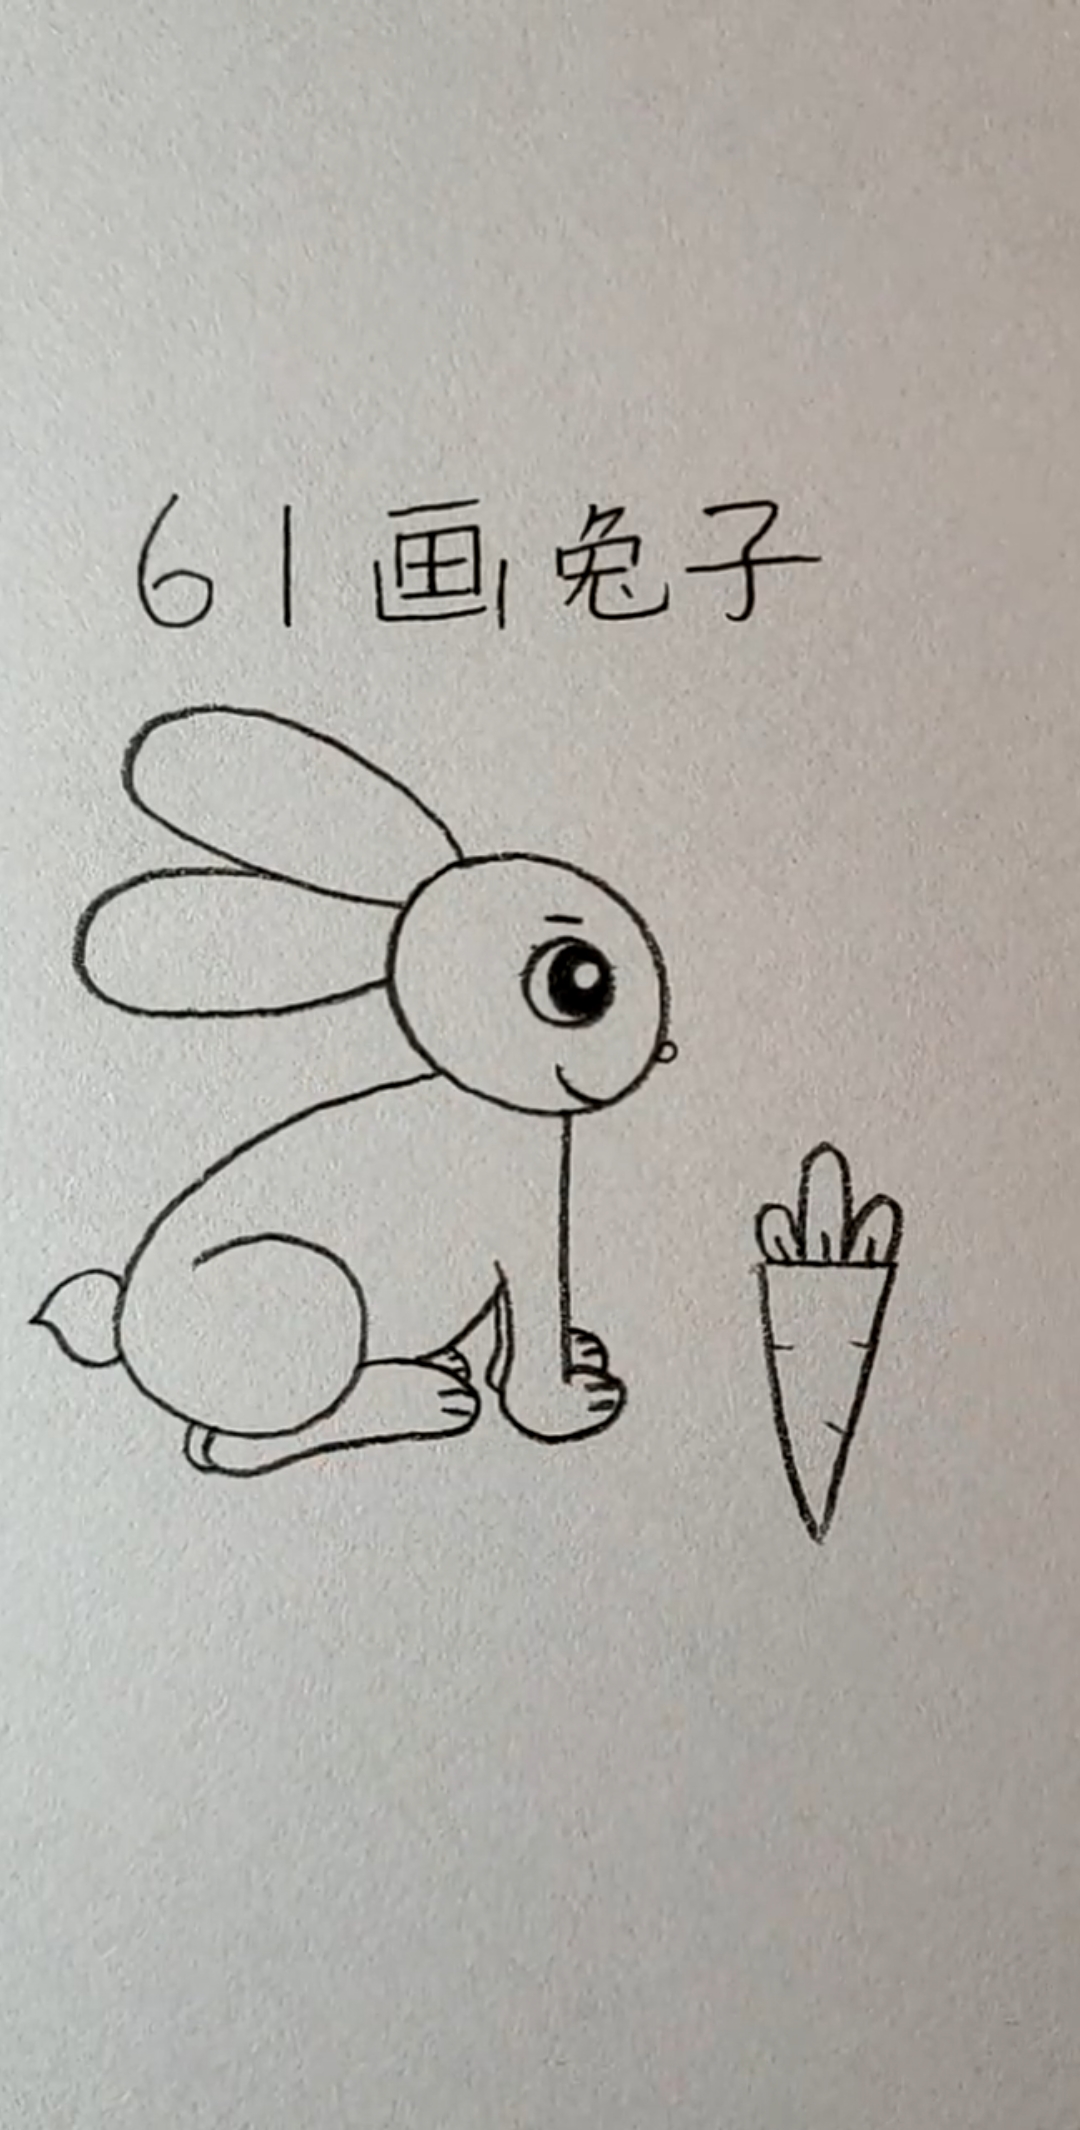 画小兔子视频教程图片